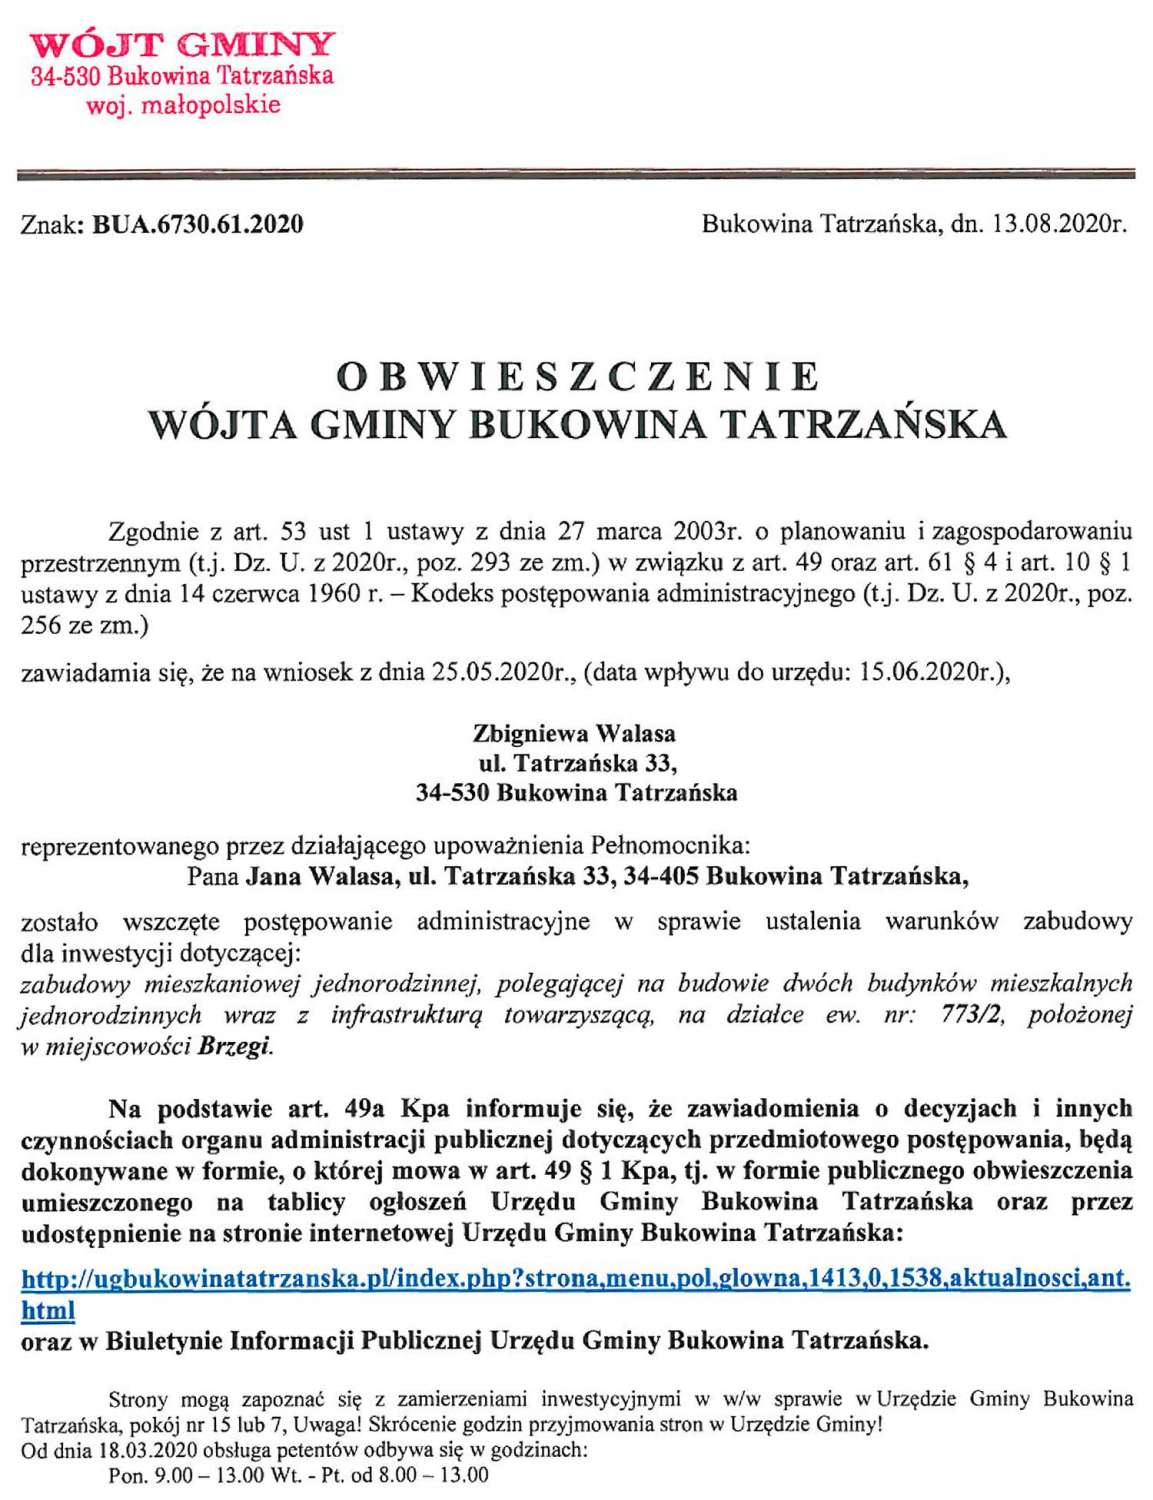 Obwieszczenie Wójta Gminy Bukowina Tatrzańska BUA 6730.61.2020